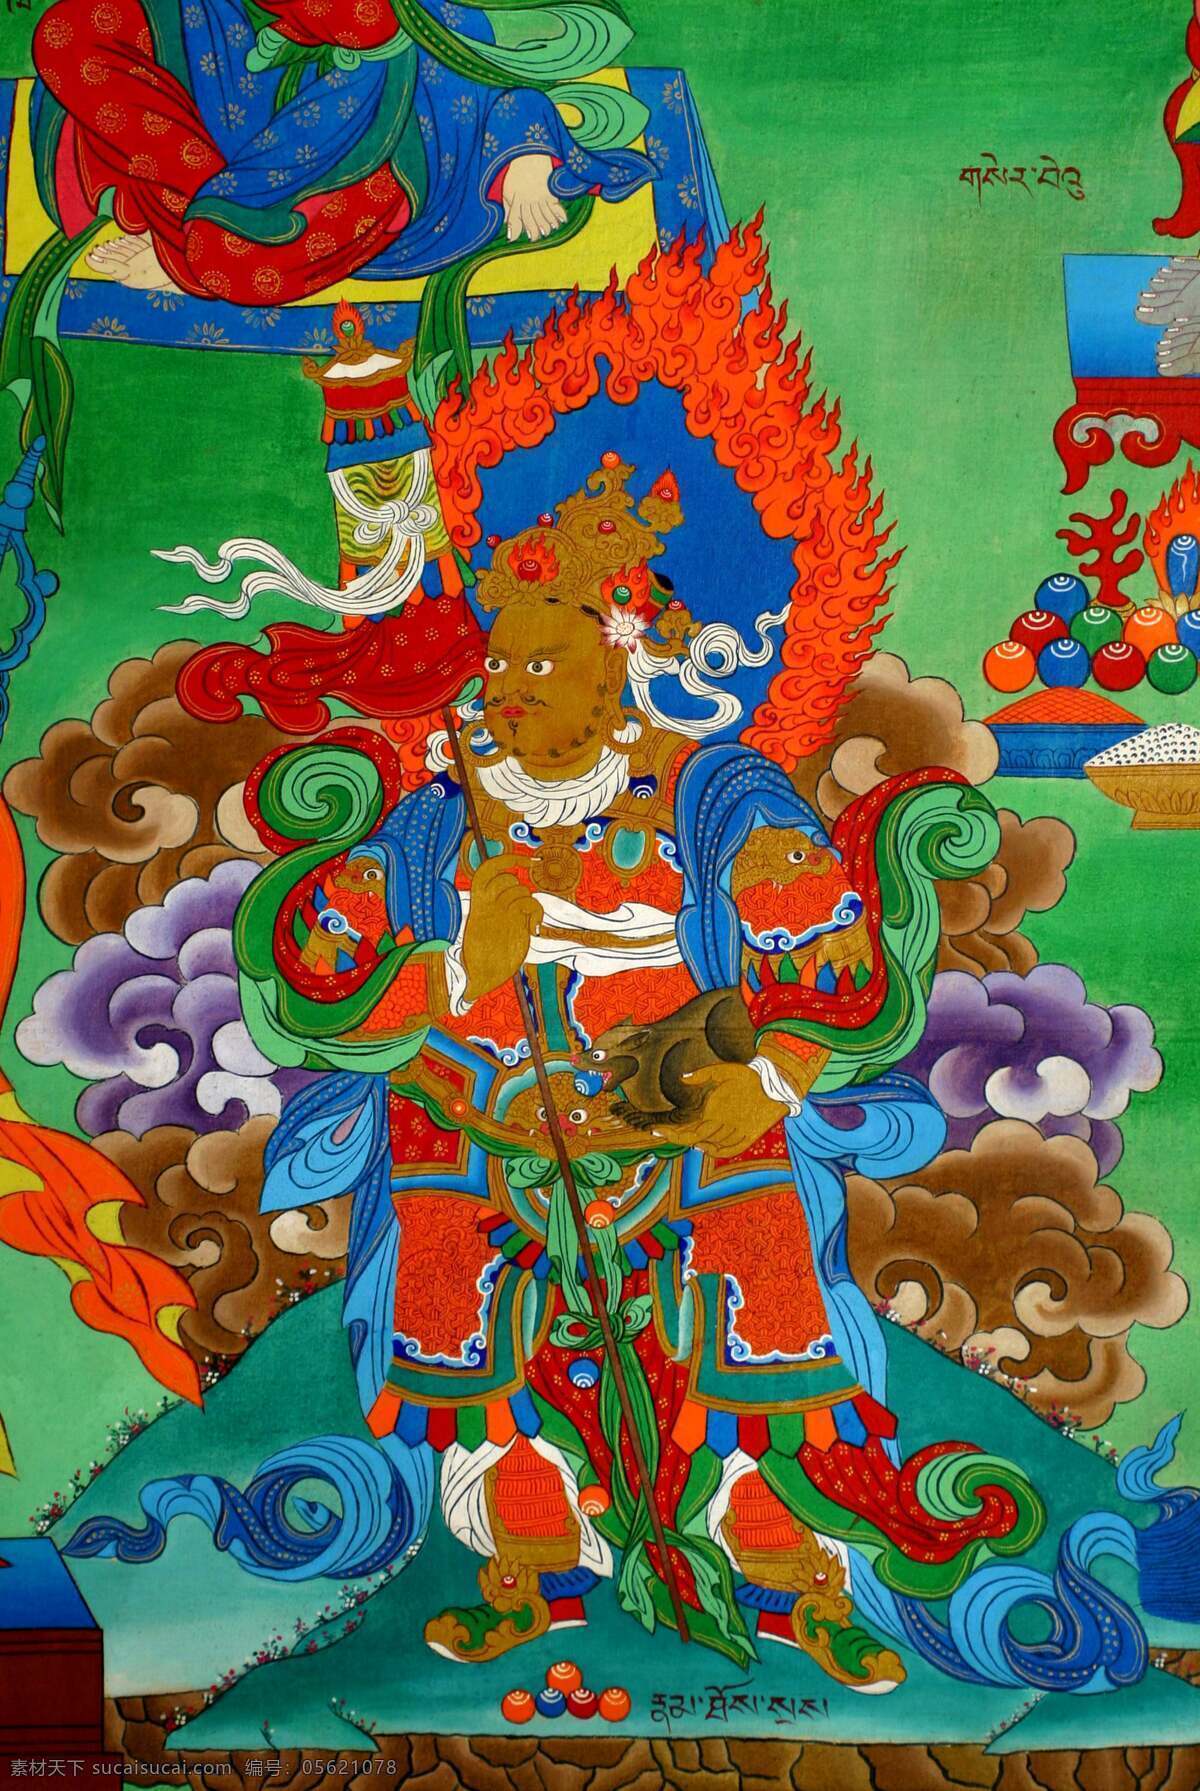 藏传佛教 壁画 康 卡 唐卡 西藏 宗教信仰 文化艺术 艺术瑰宝 藏画 原始 色彩 浓郁 造型 神秘 绘画 工艺 精美绝伦 摄影图库